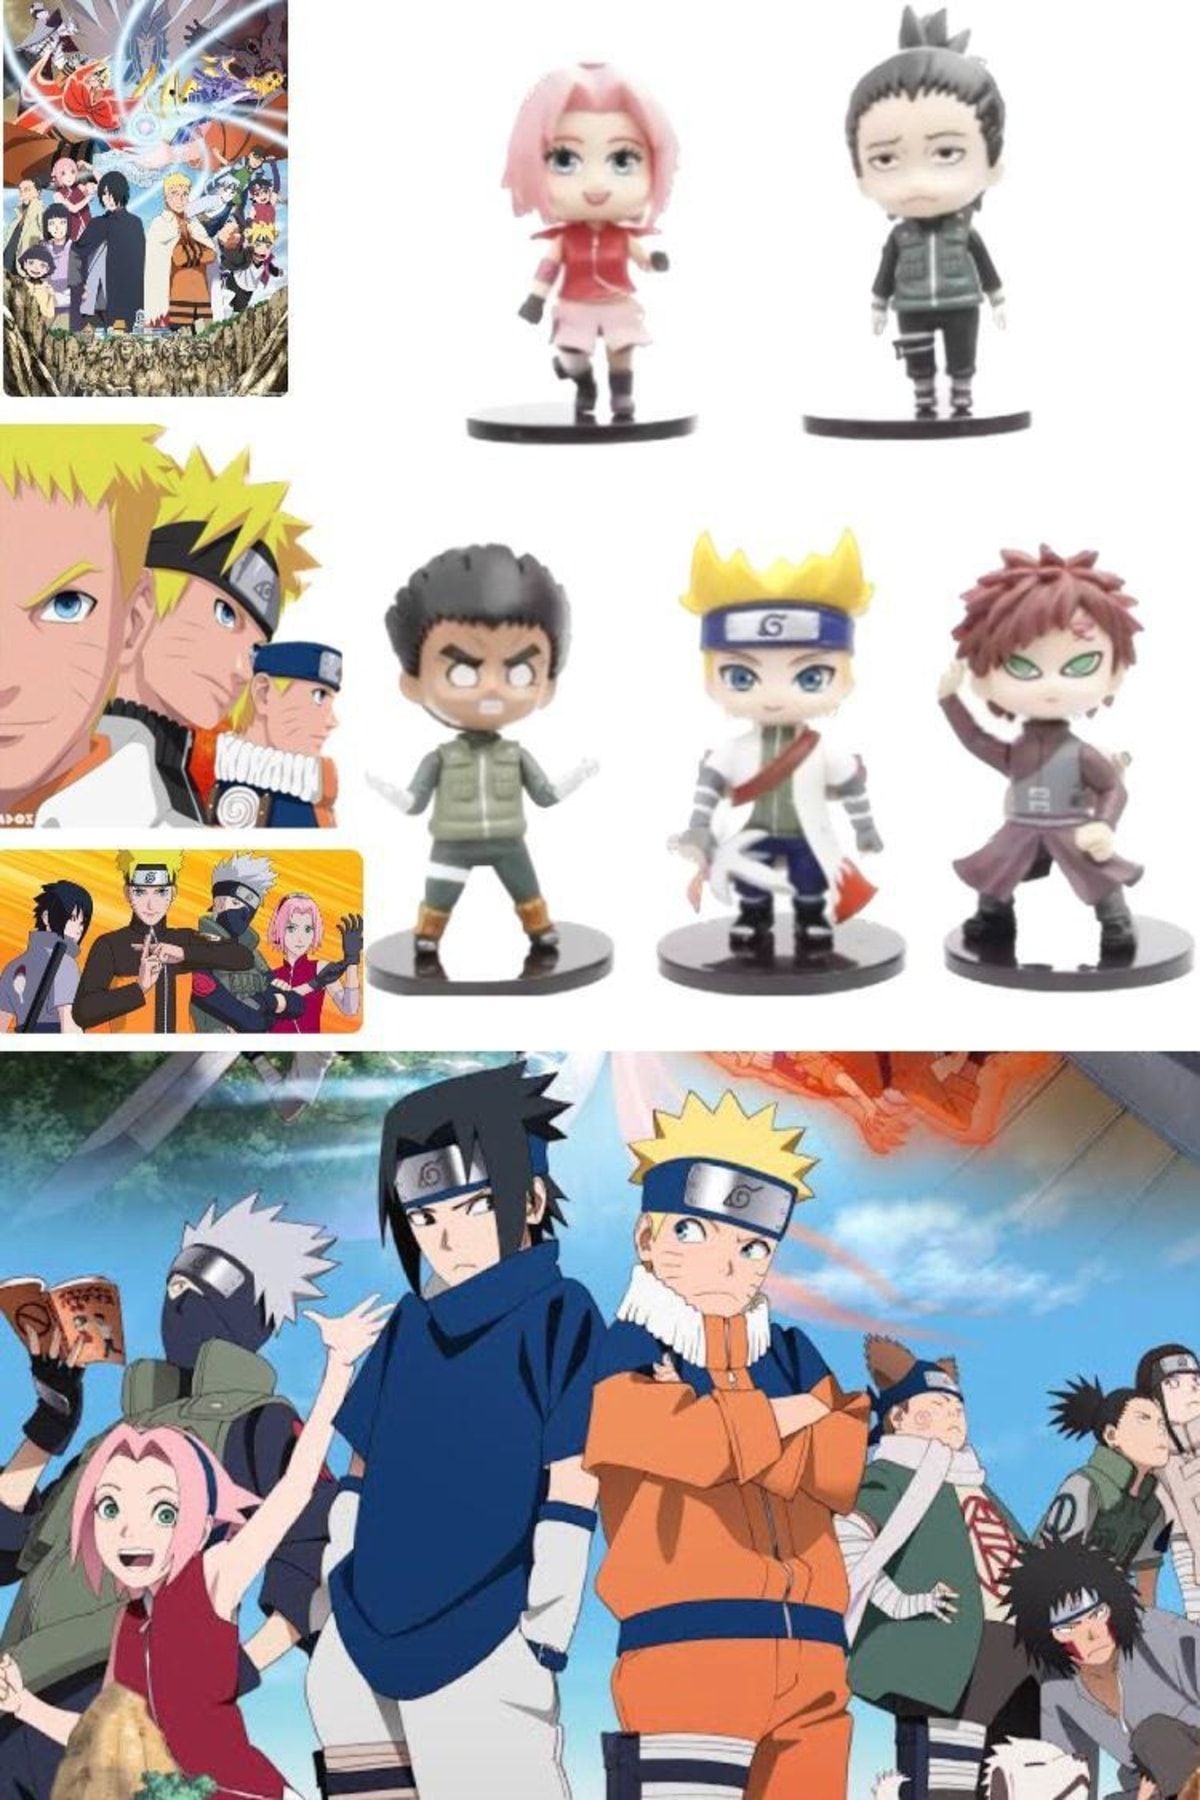 Utelips 5 Adet Minyatür Naruto Uzumaki Ve Anime Film Baş Kahramanlar Serisi Figür Heykel Seti Şık Hediyelik